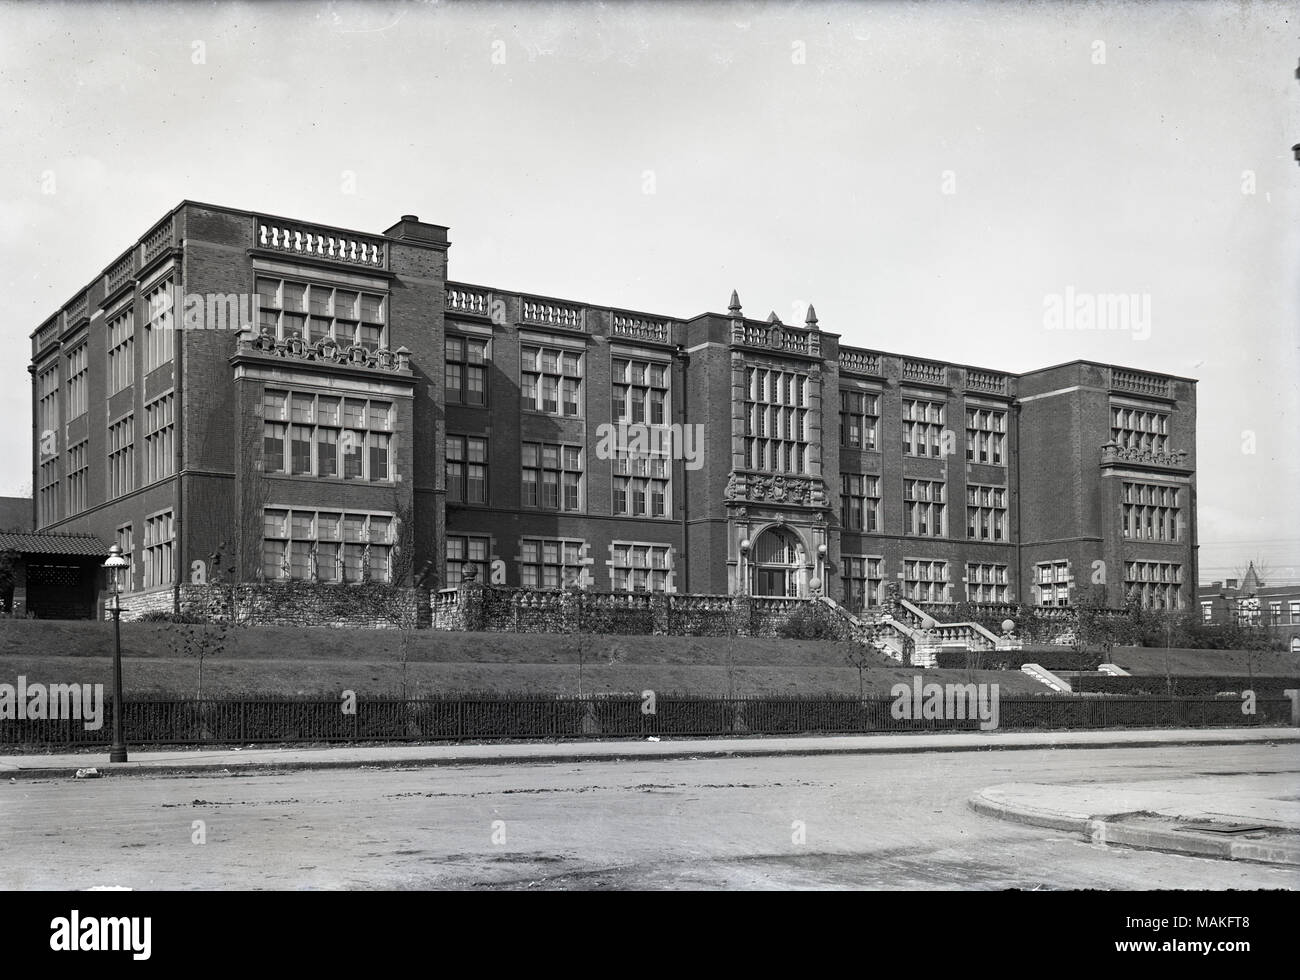 L'horizontale, 1970 Photographie noir et blanc montrant un bâtiment en brique de trois étages à une vue de trois-quarts. Titre : Teachers College, St Louis. . Novembre 1915. Oscar Kuehn Banque D'Images